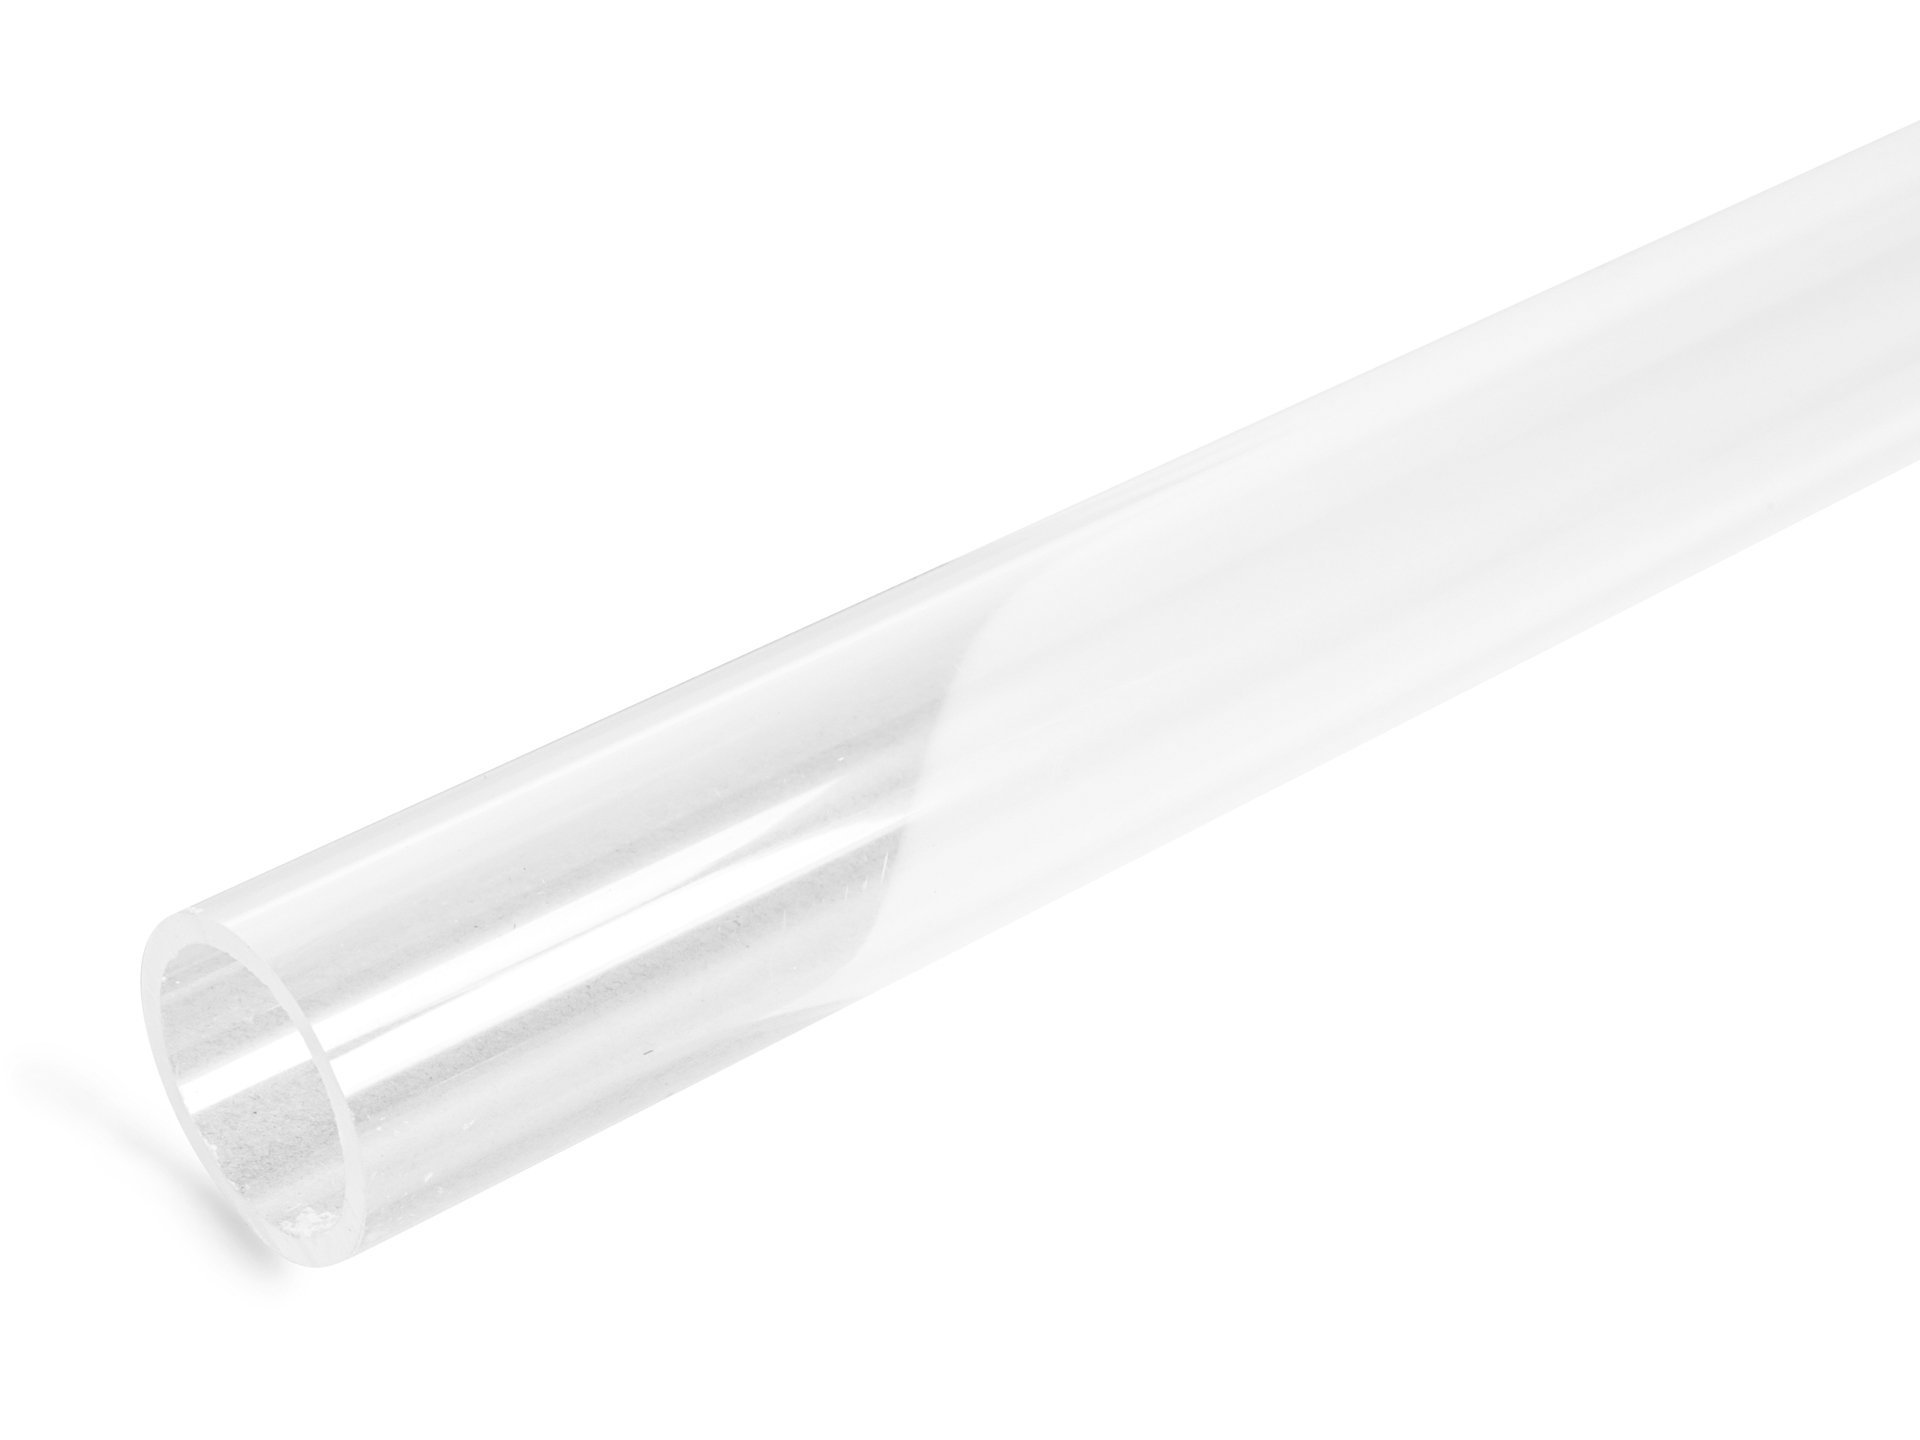 Acquistare Tubo rotondo in vetro acrilico XT, incolore online